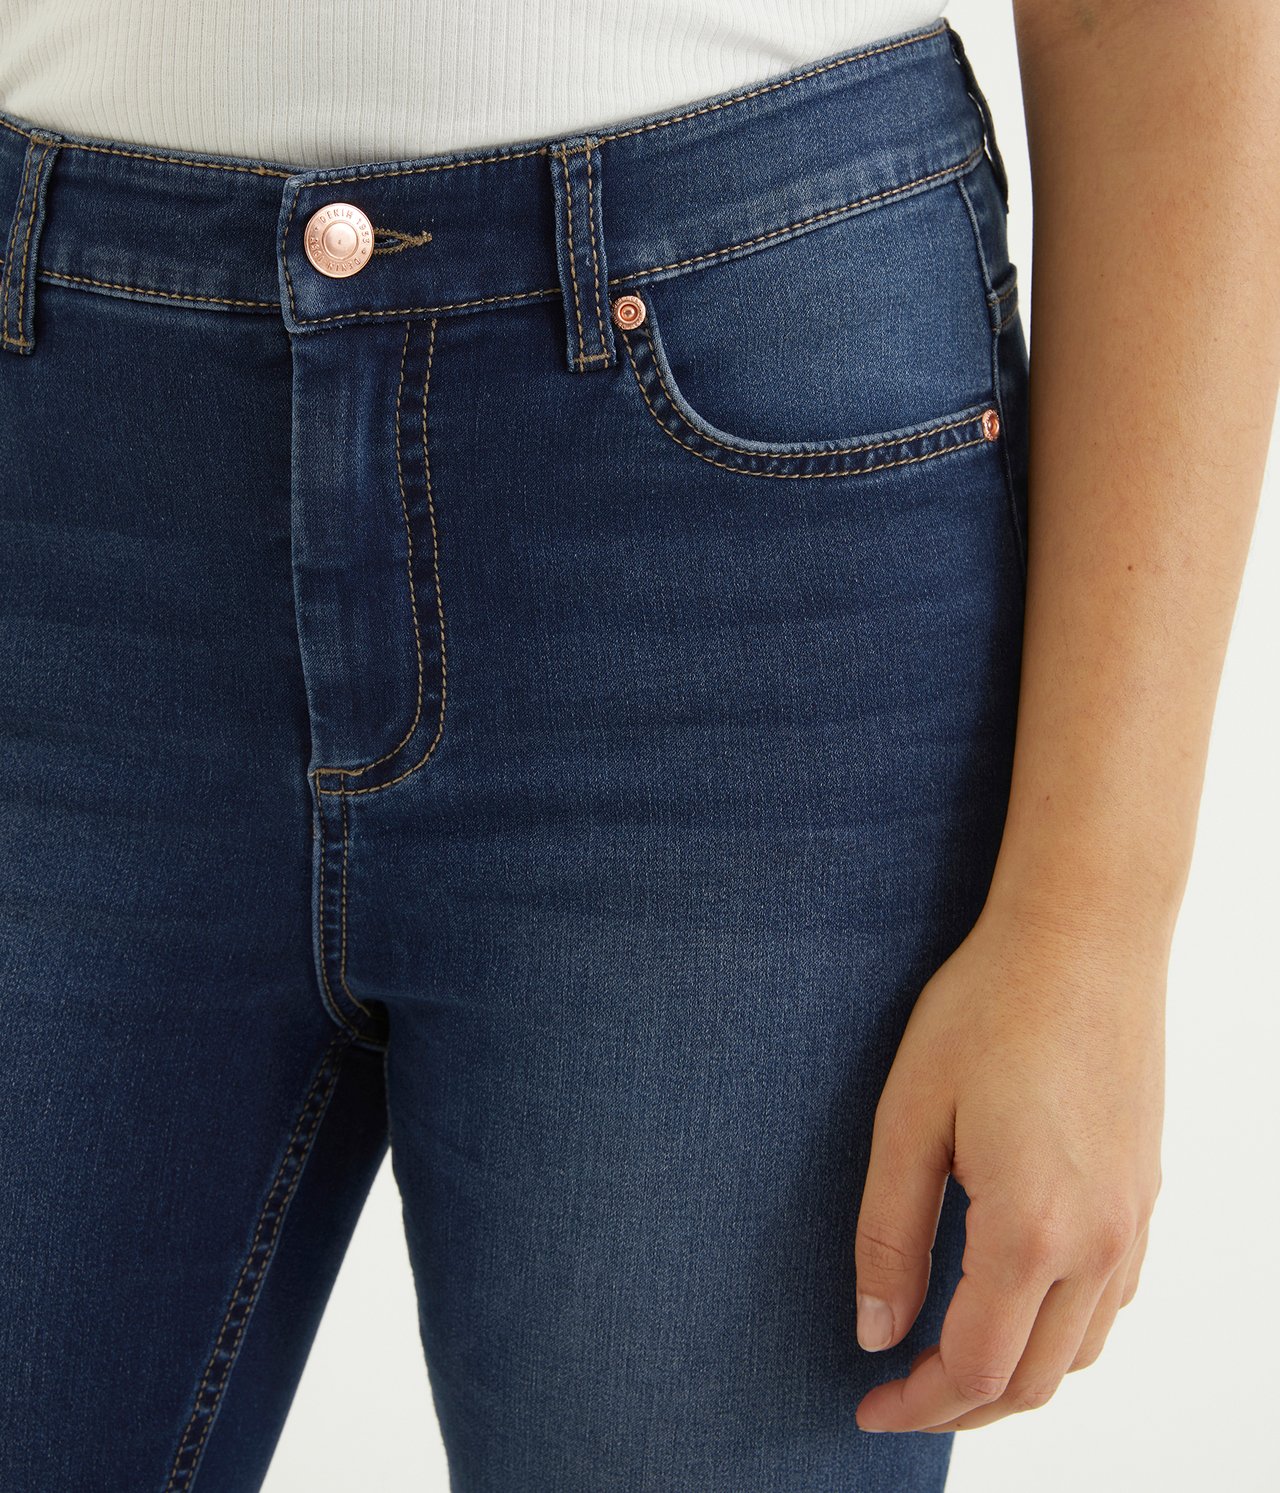 Super slim jeans short leg - Mørk denim - 2